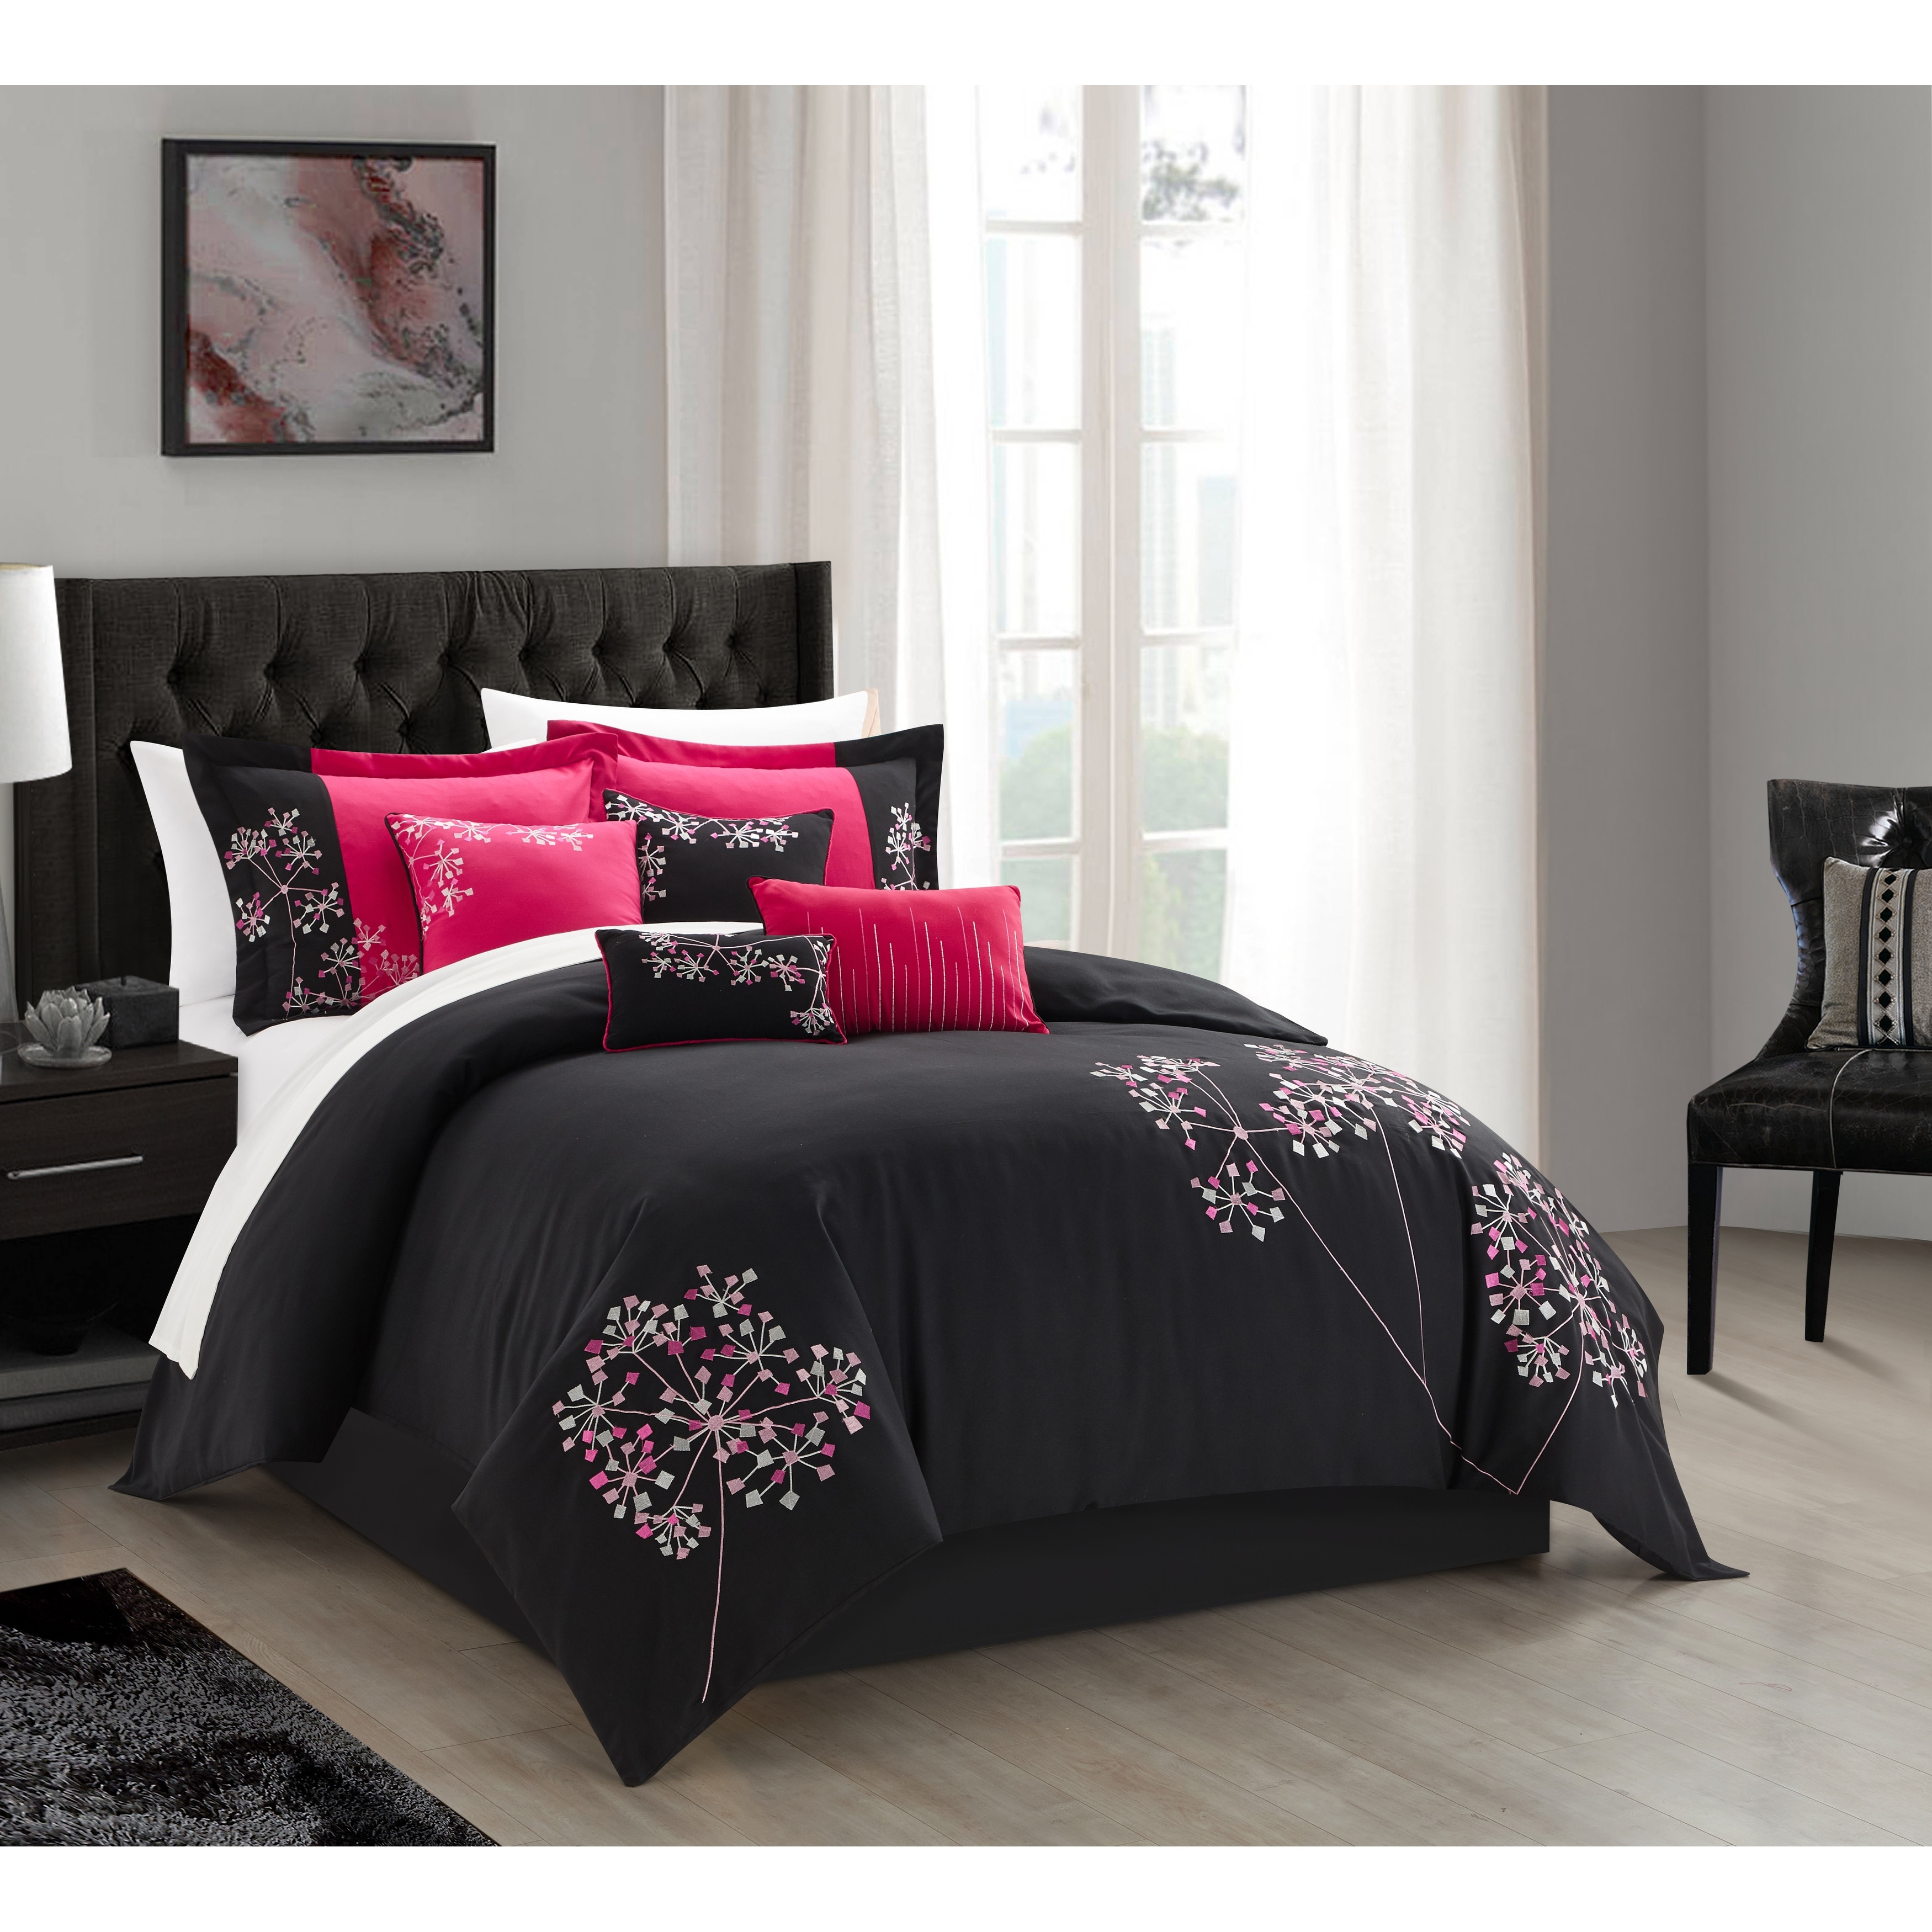 Black Floral 8-piece Embroidered Comforter Set